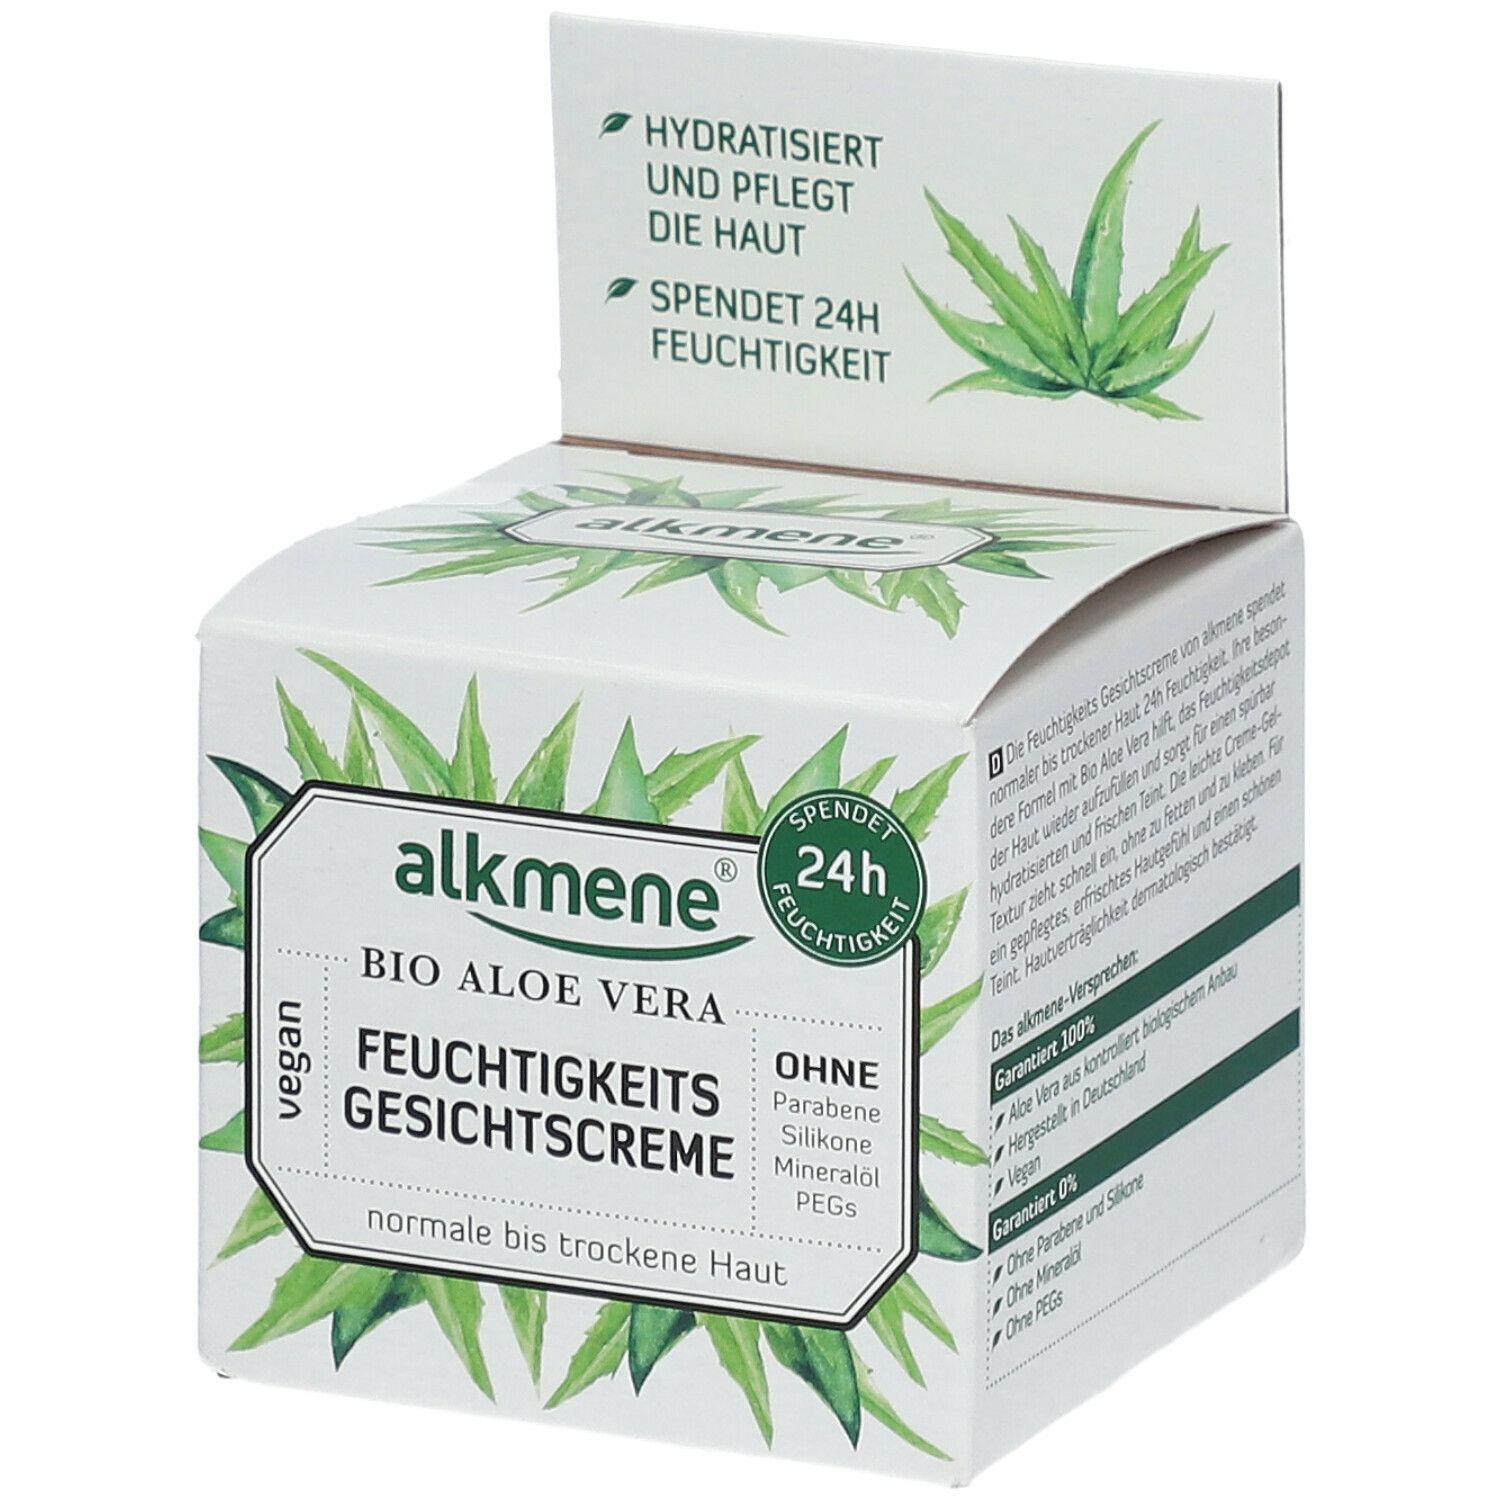 alkmene® MEINE HEILPFLANZEN Feuchtigkeits GEsichtscreme